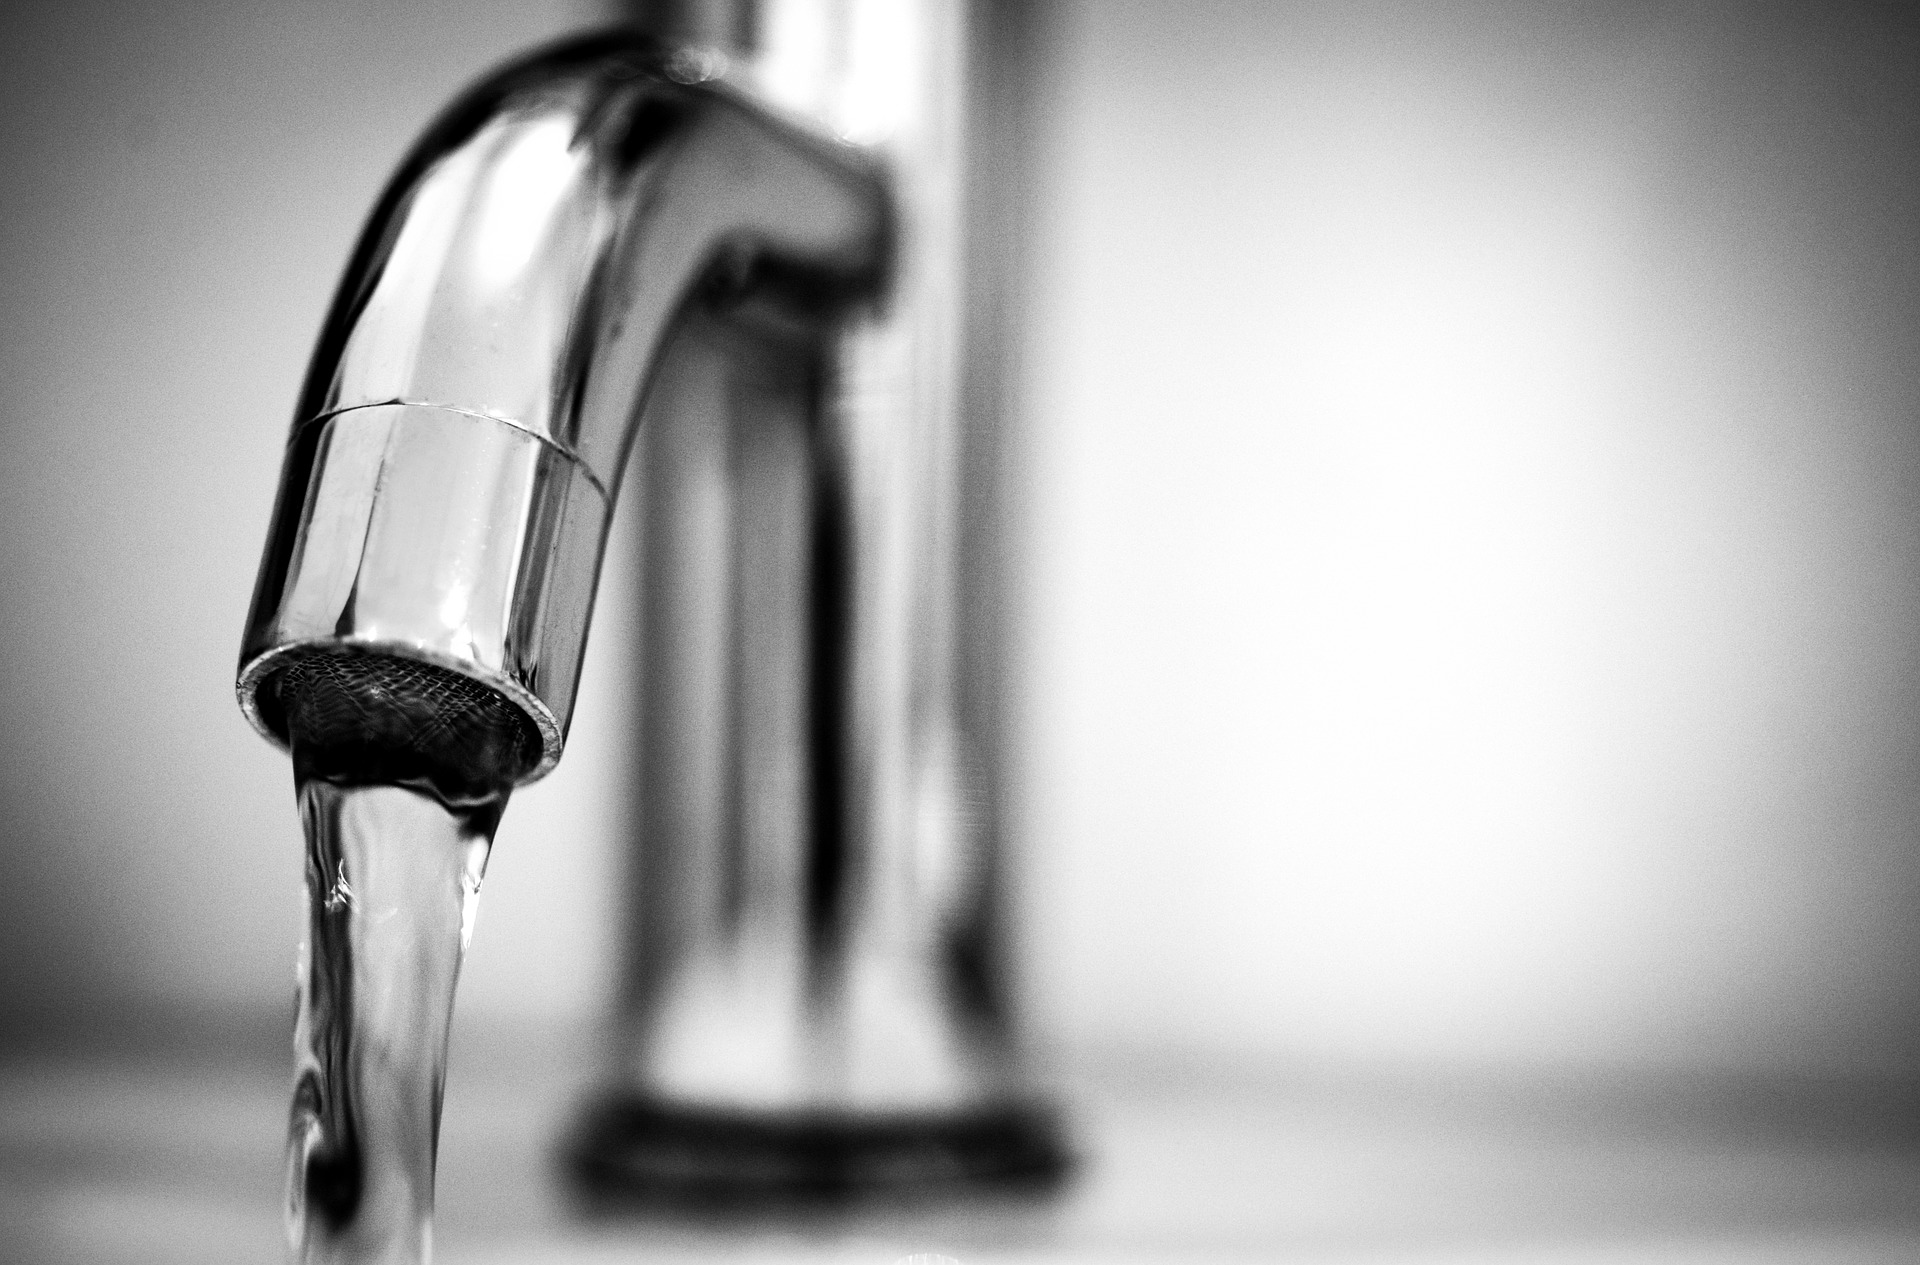 Avviso di sospensione idrica programmata nel comune di Camaiore giovedì 4 novembre 2021